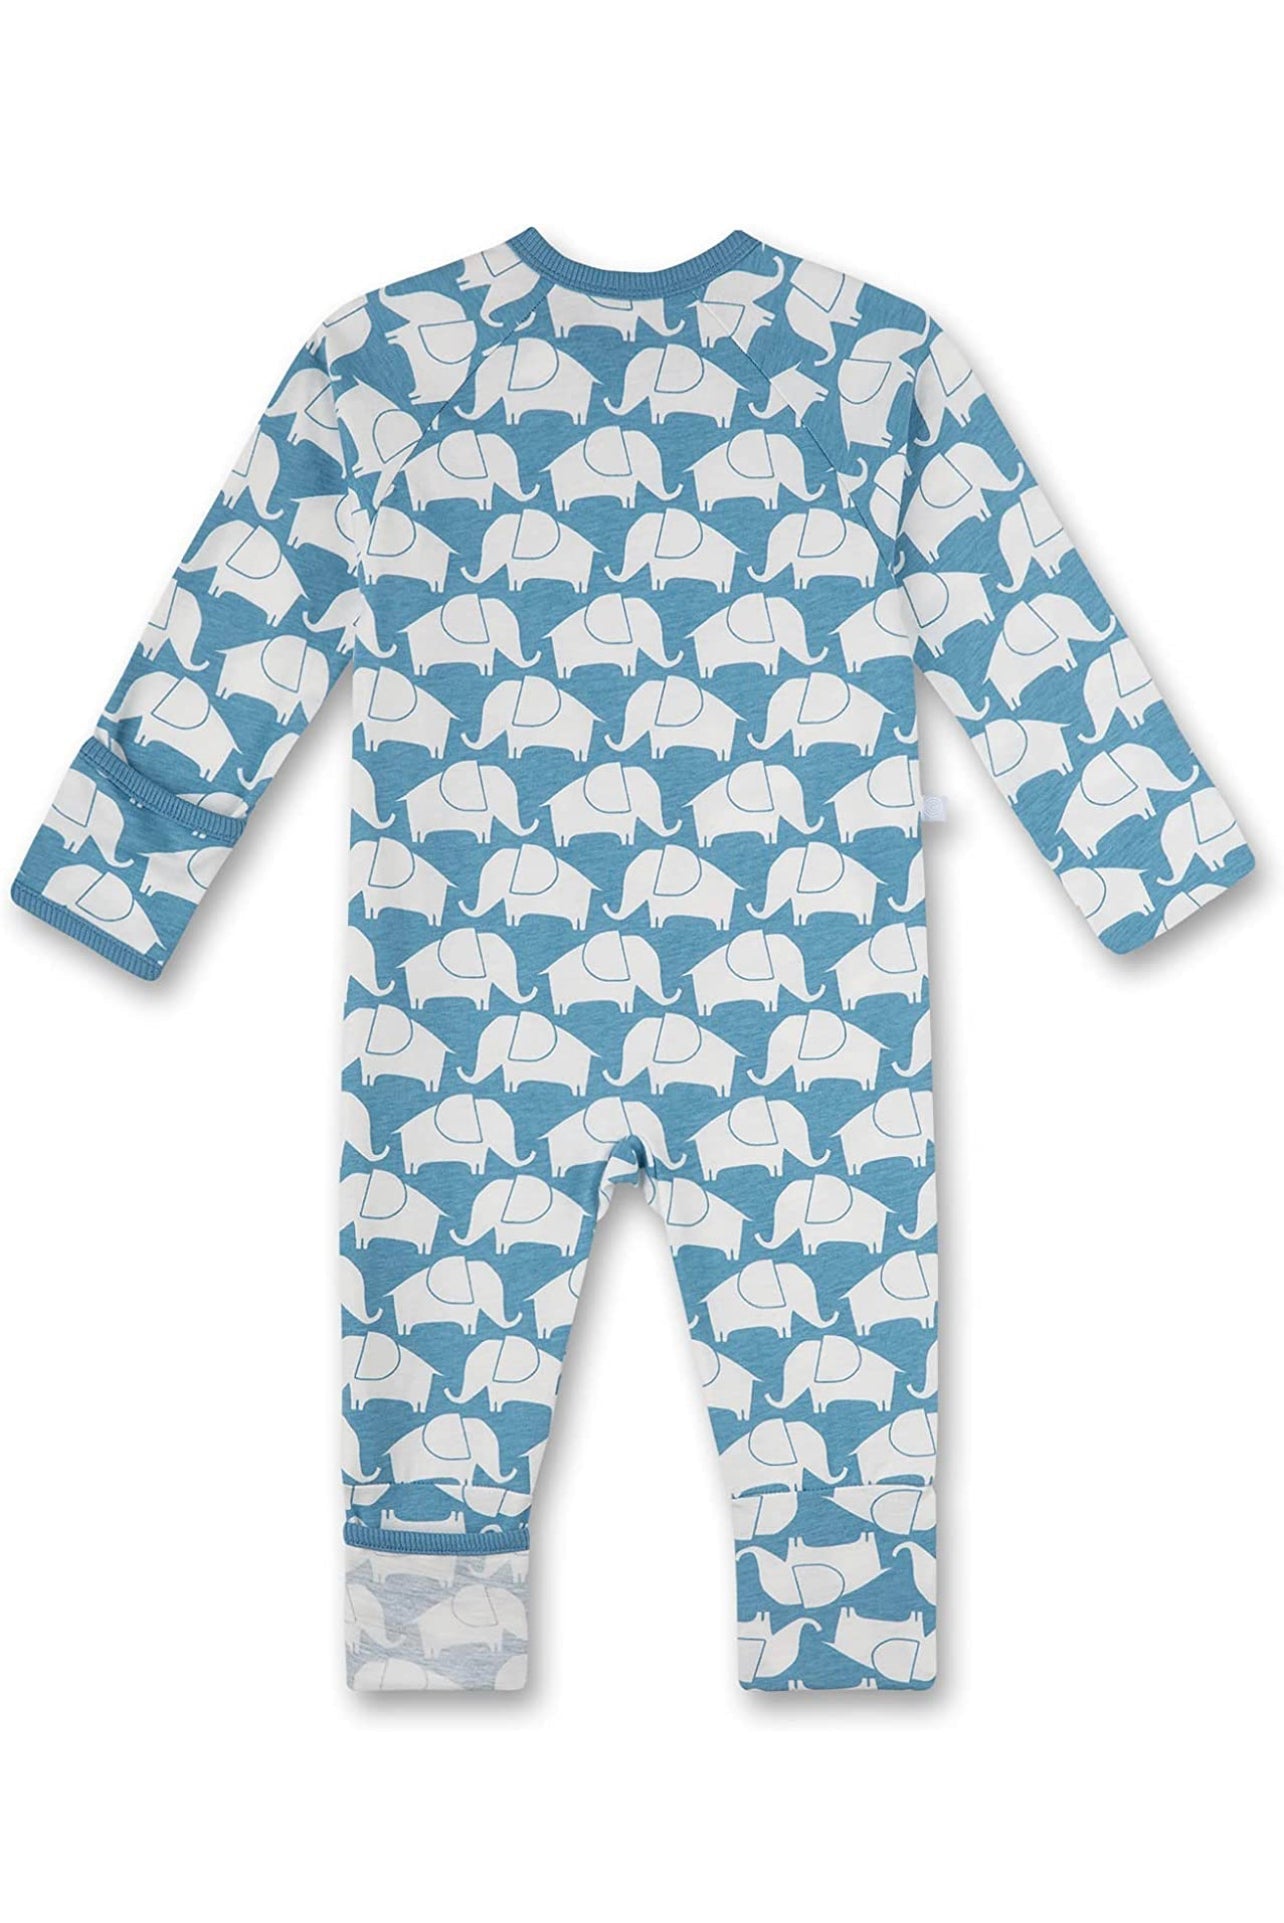 Sanetta Schlafanzug/Overall mit Elefanten Motiv-Mokkini Kindermode